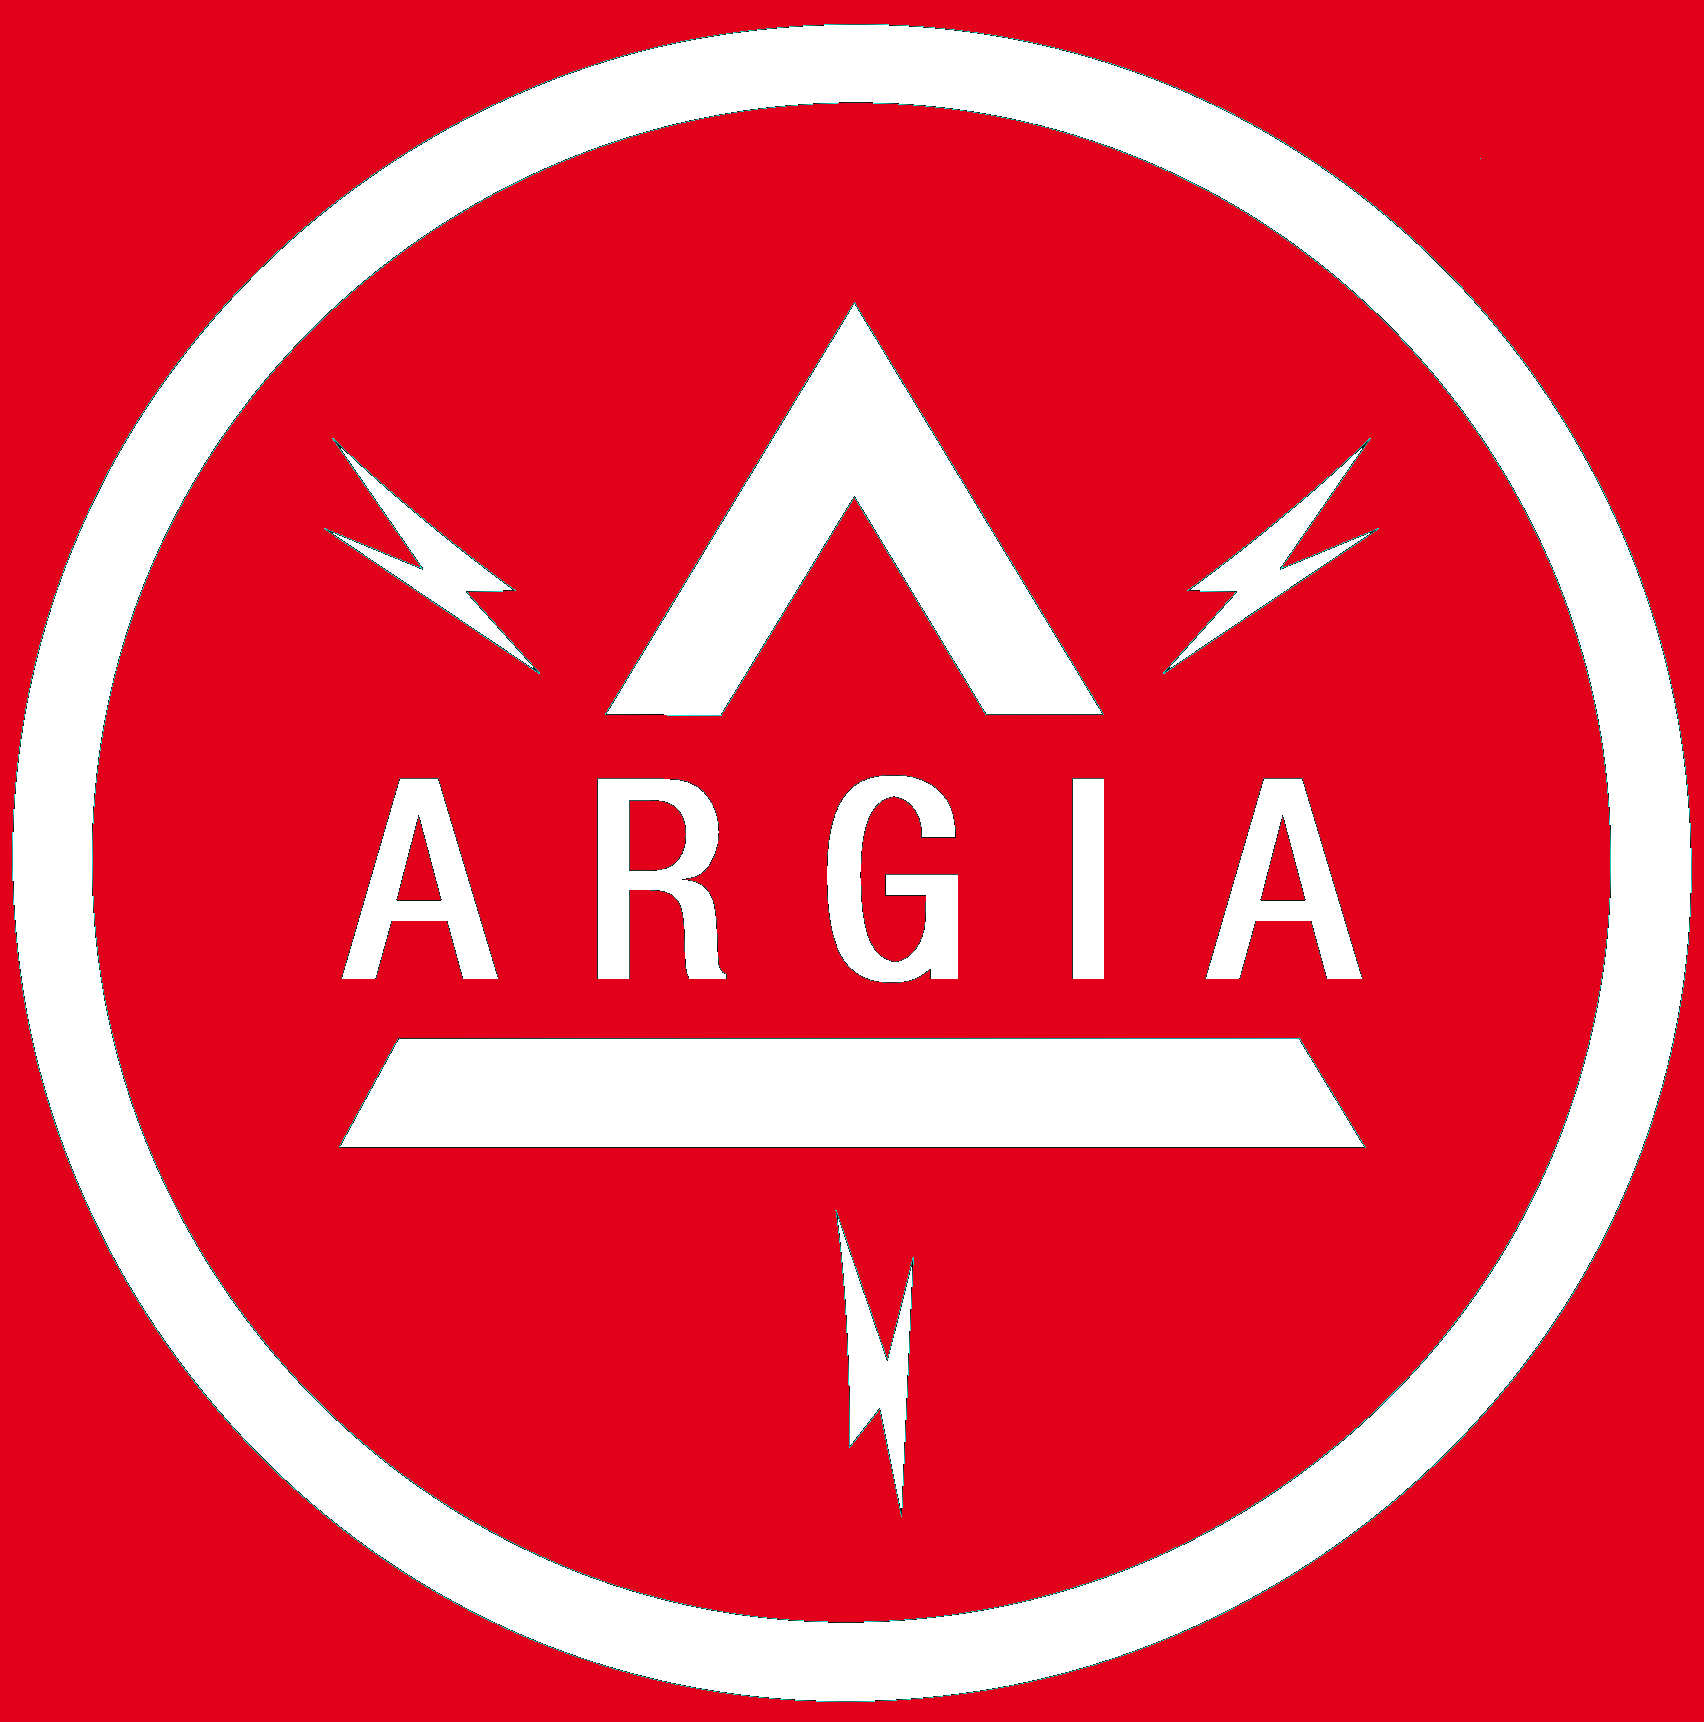 ARGIA TRANSFORMERS PVT. LTD